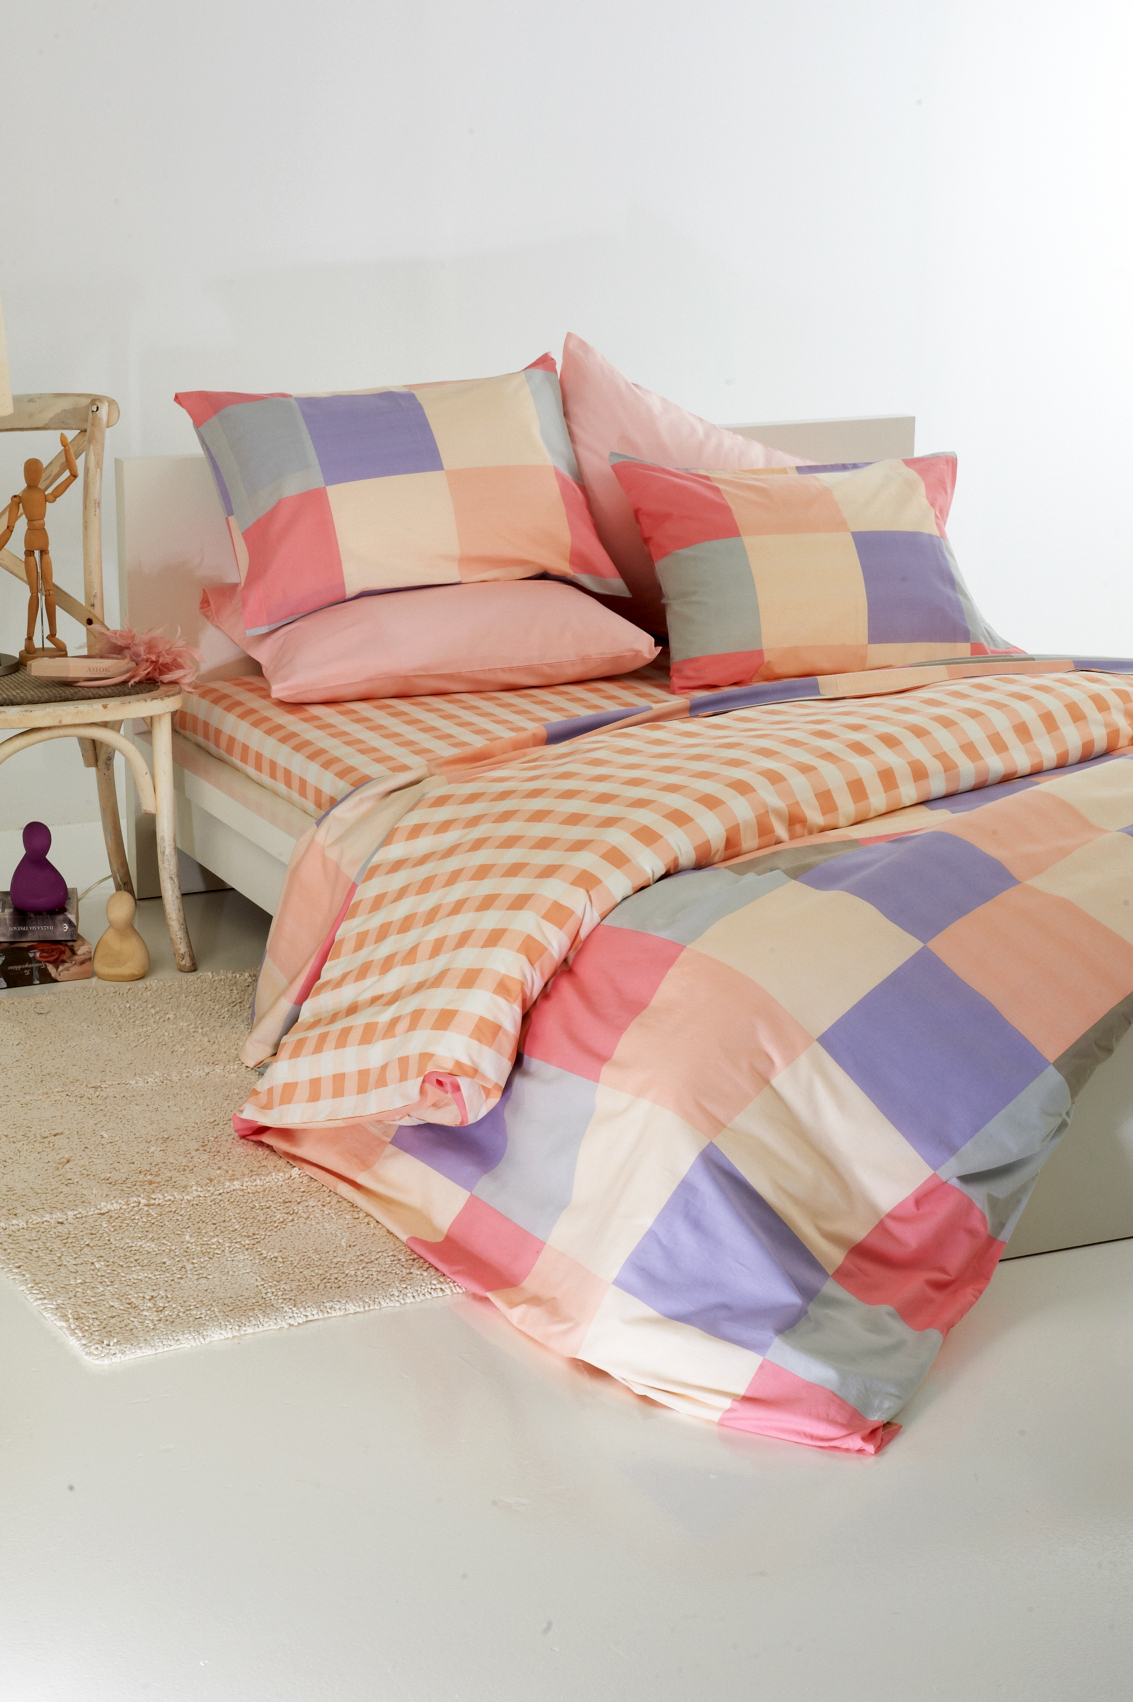 textile bed linen bed sheets Greece bedroom design Patterns